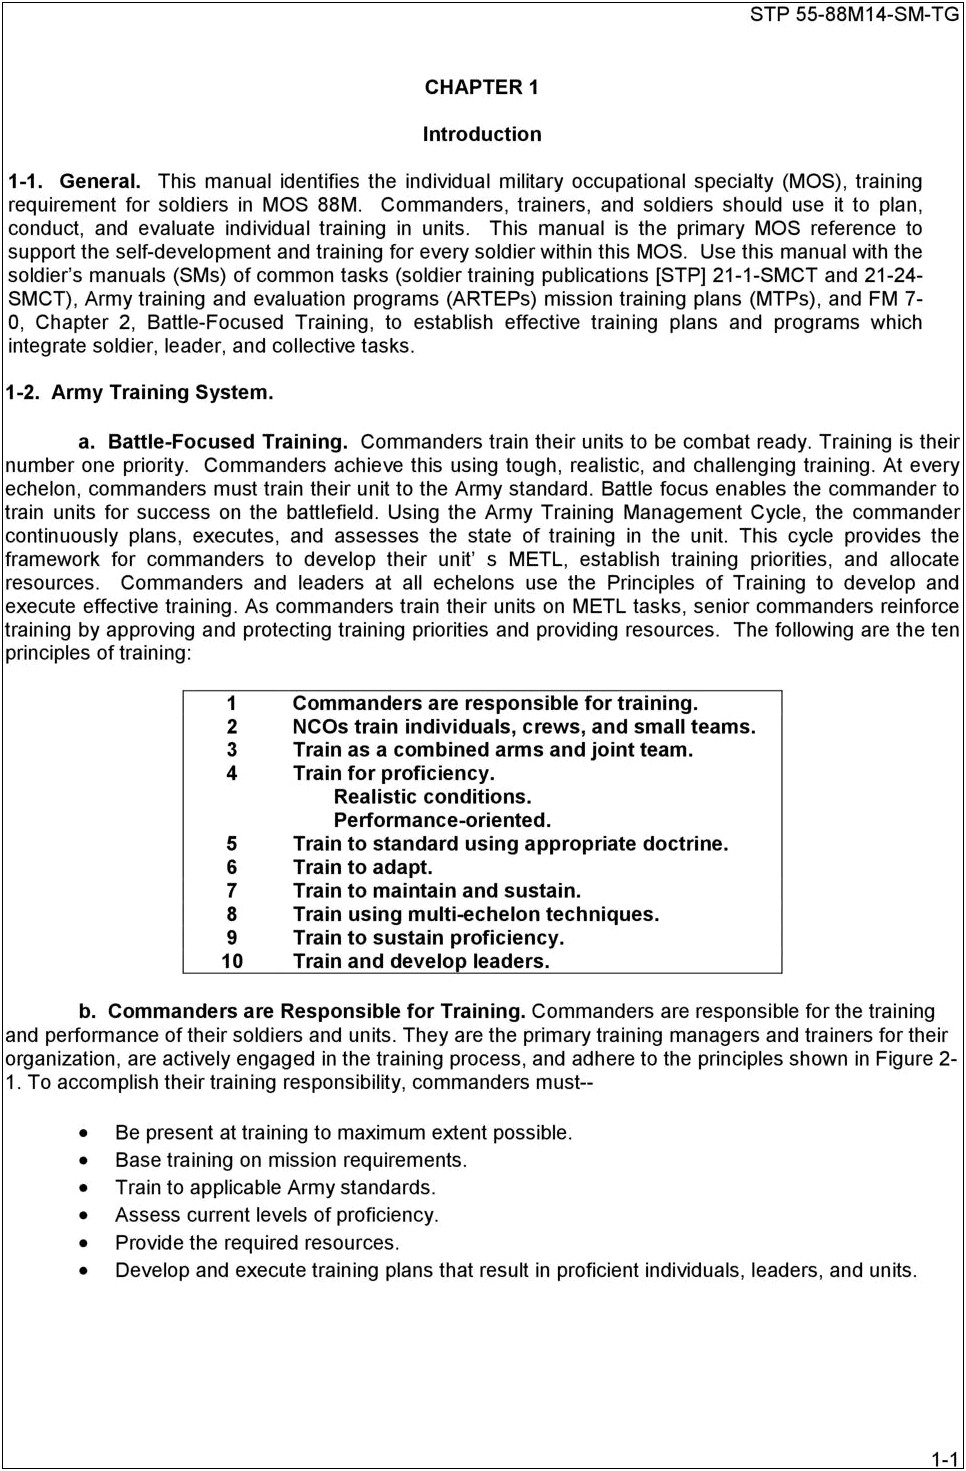 Army Reserve 88m Job Descriptions Resume